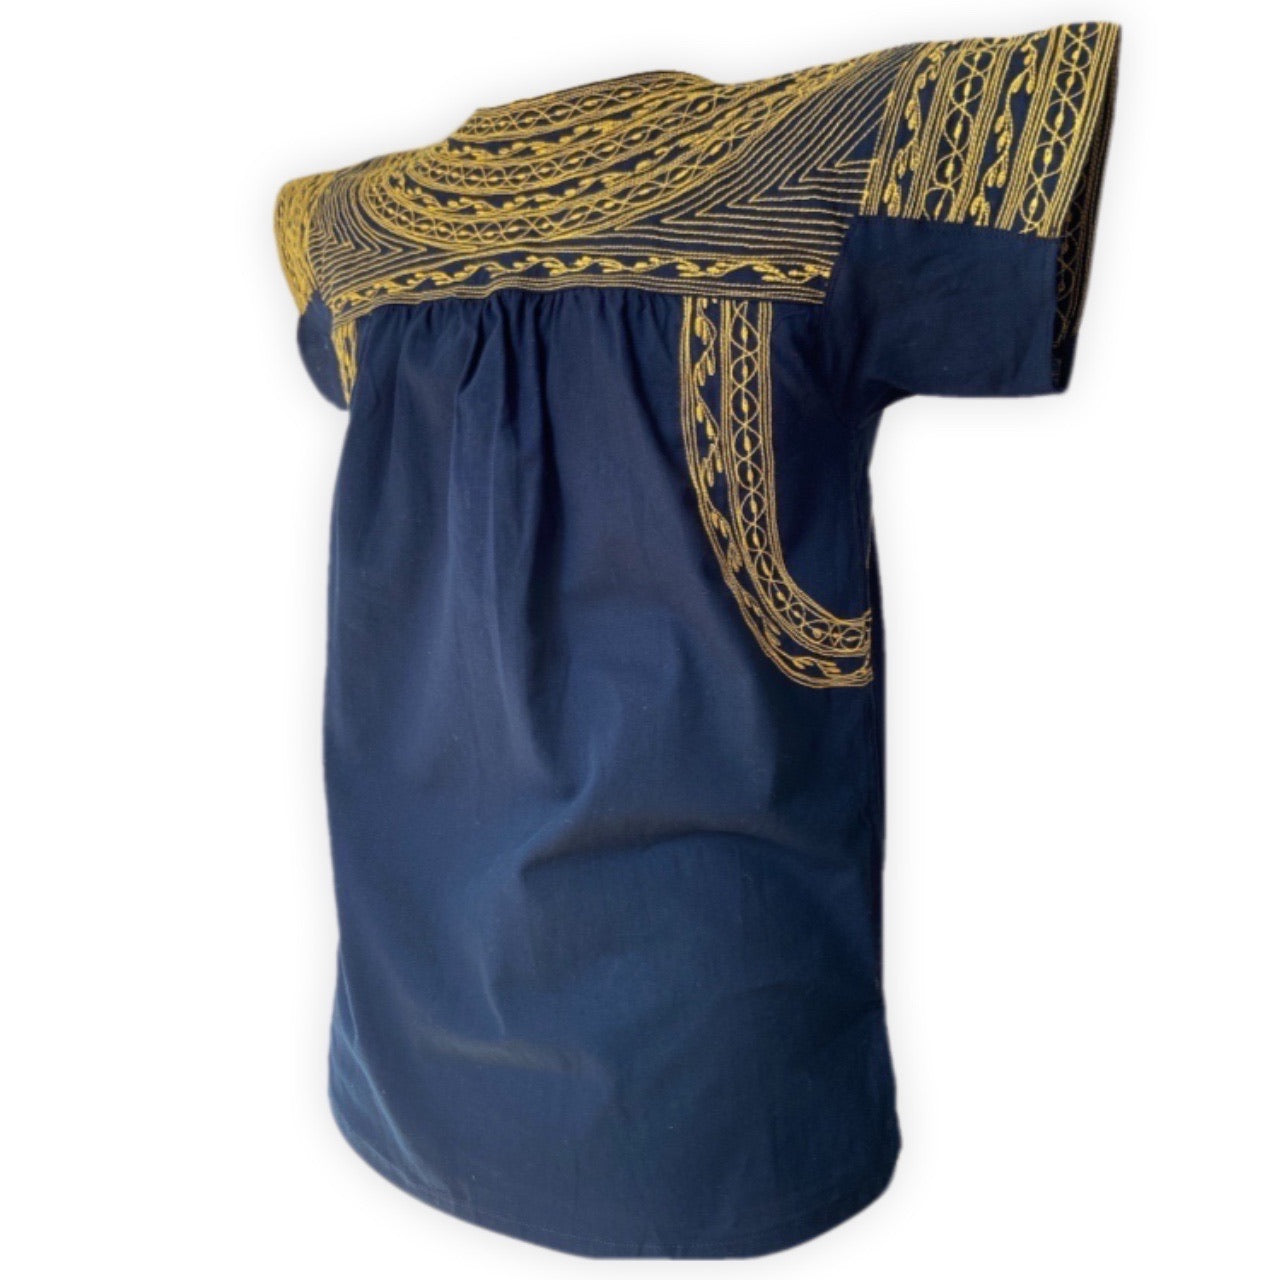 Blusa artesanal oaxaqueña azul marino con bordado en ocre